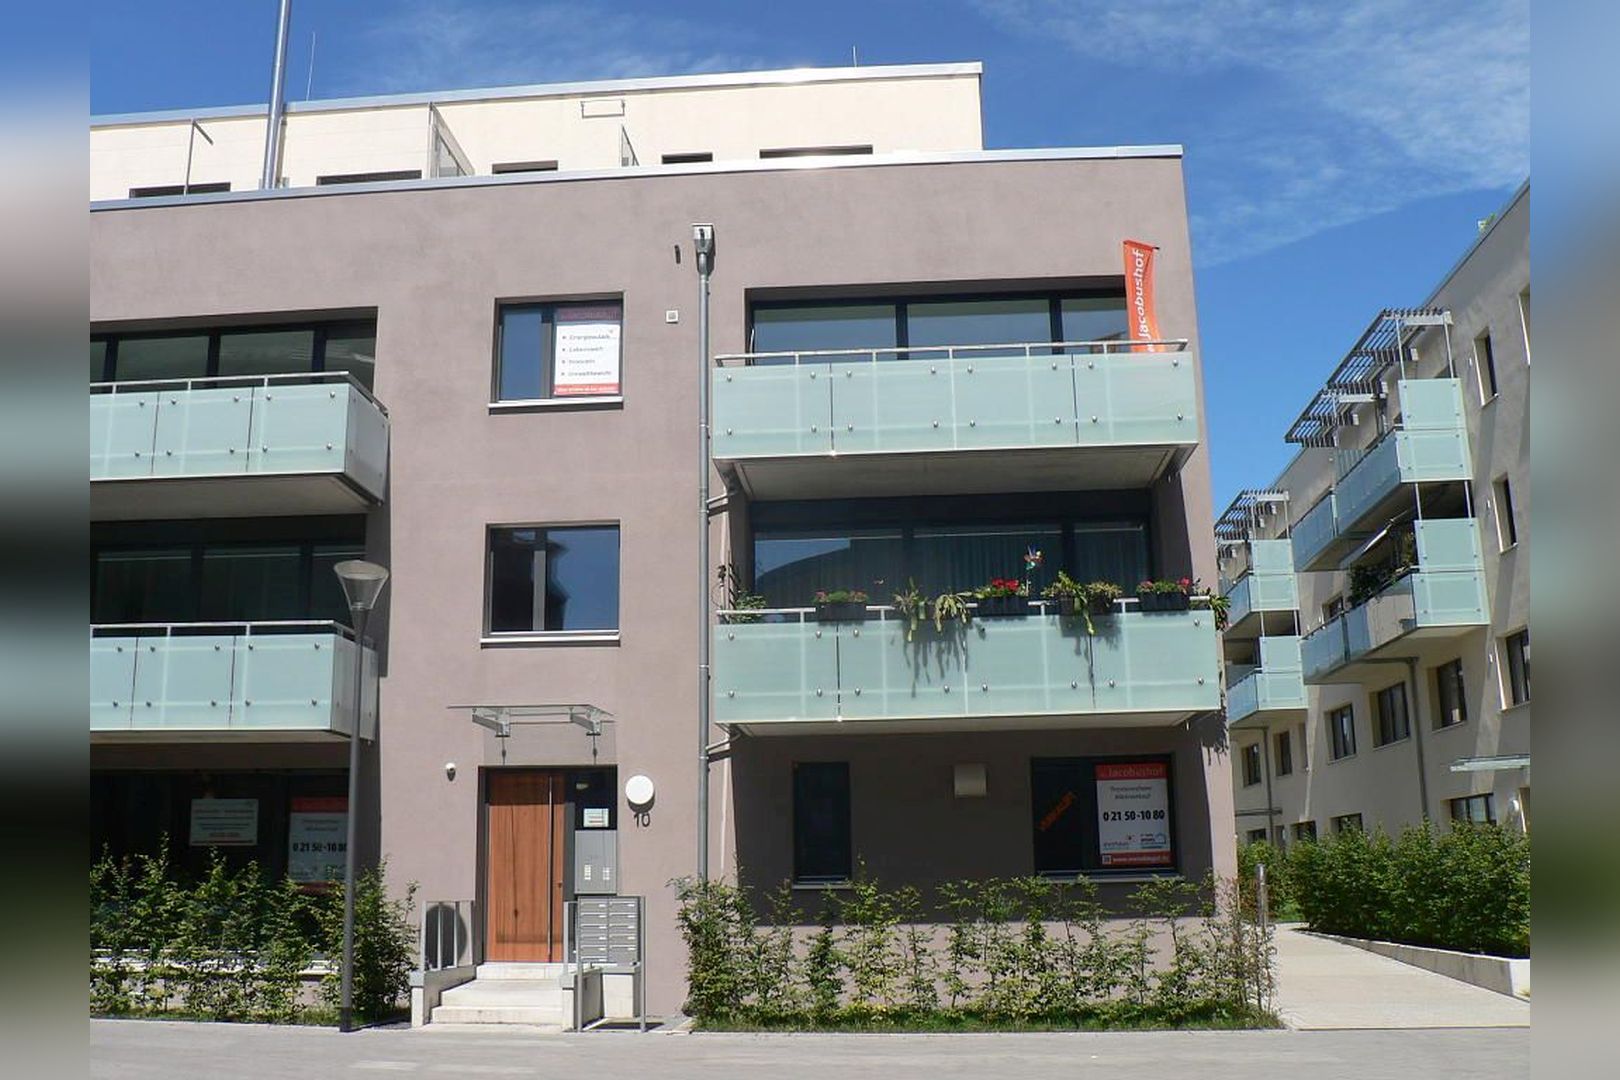 Immobilie Nr.Hilden 54 - 3-Raum-Maisonette-Wohnung mit Balkon und Dachterrasse - Bild main.jpg